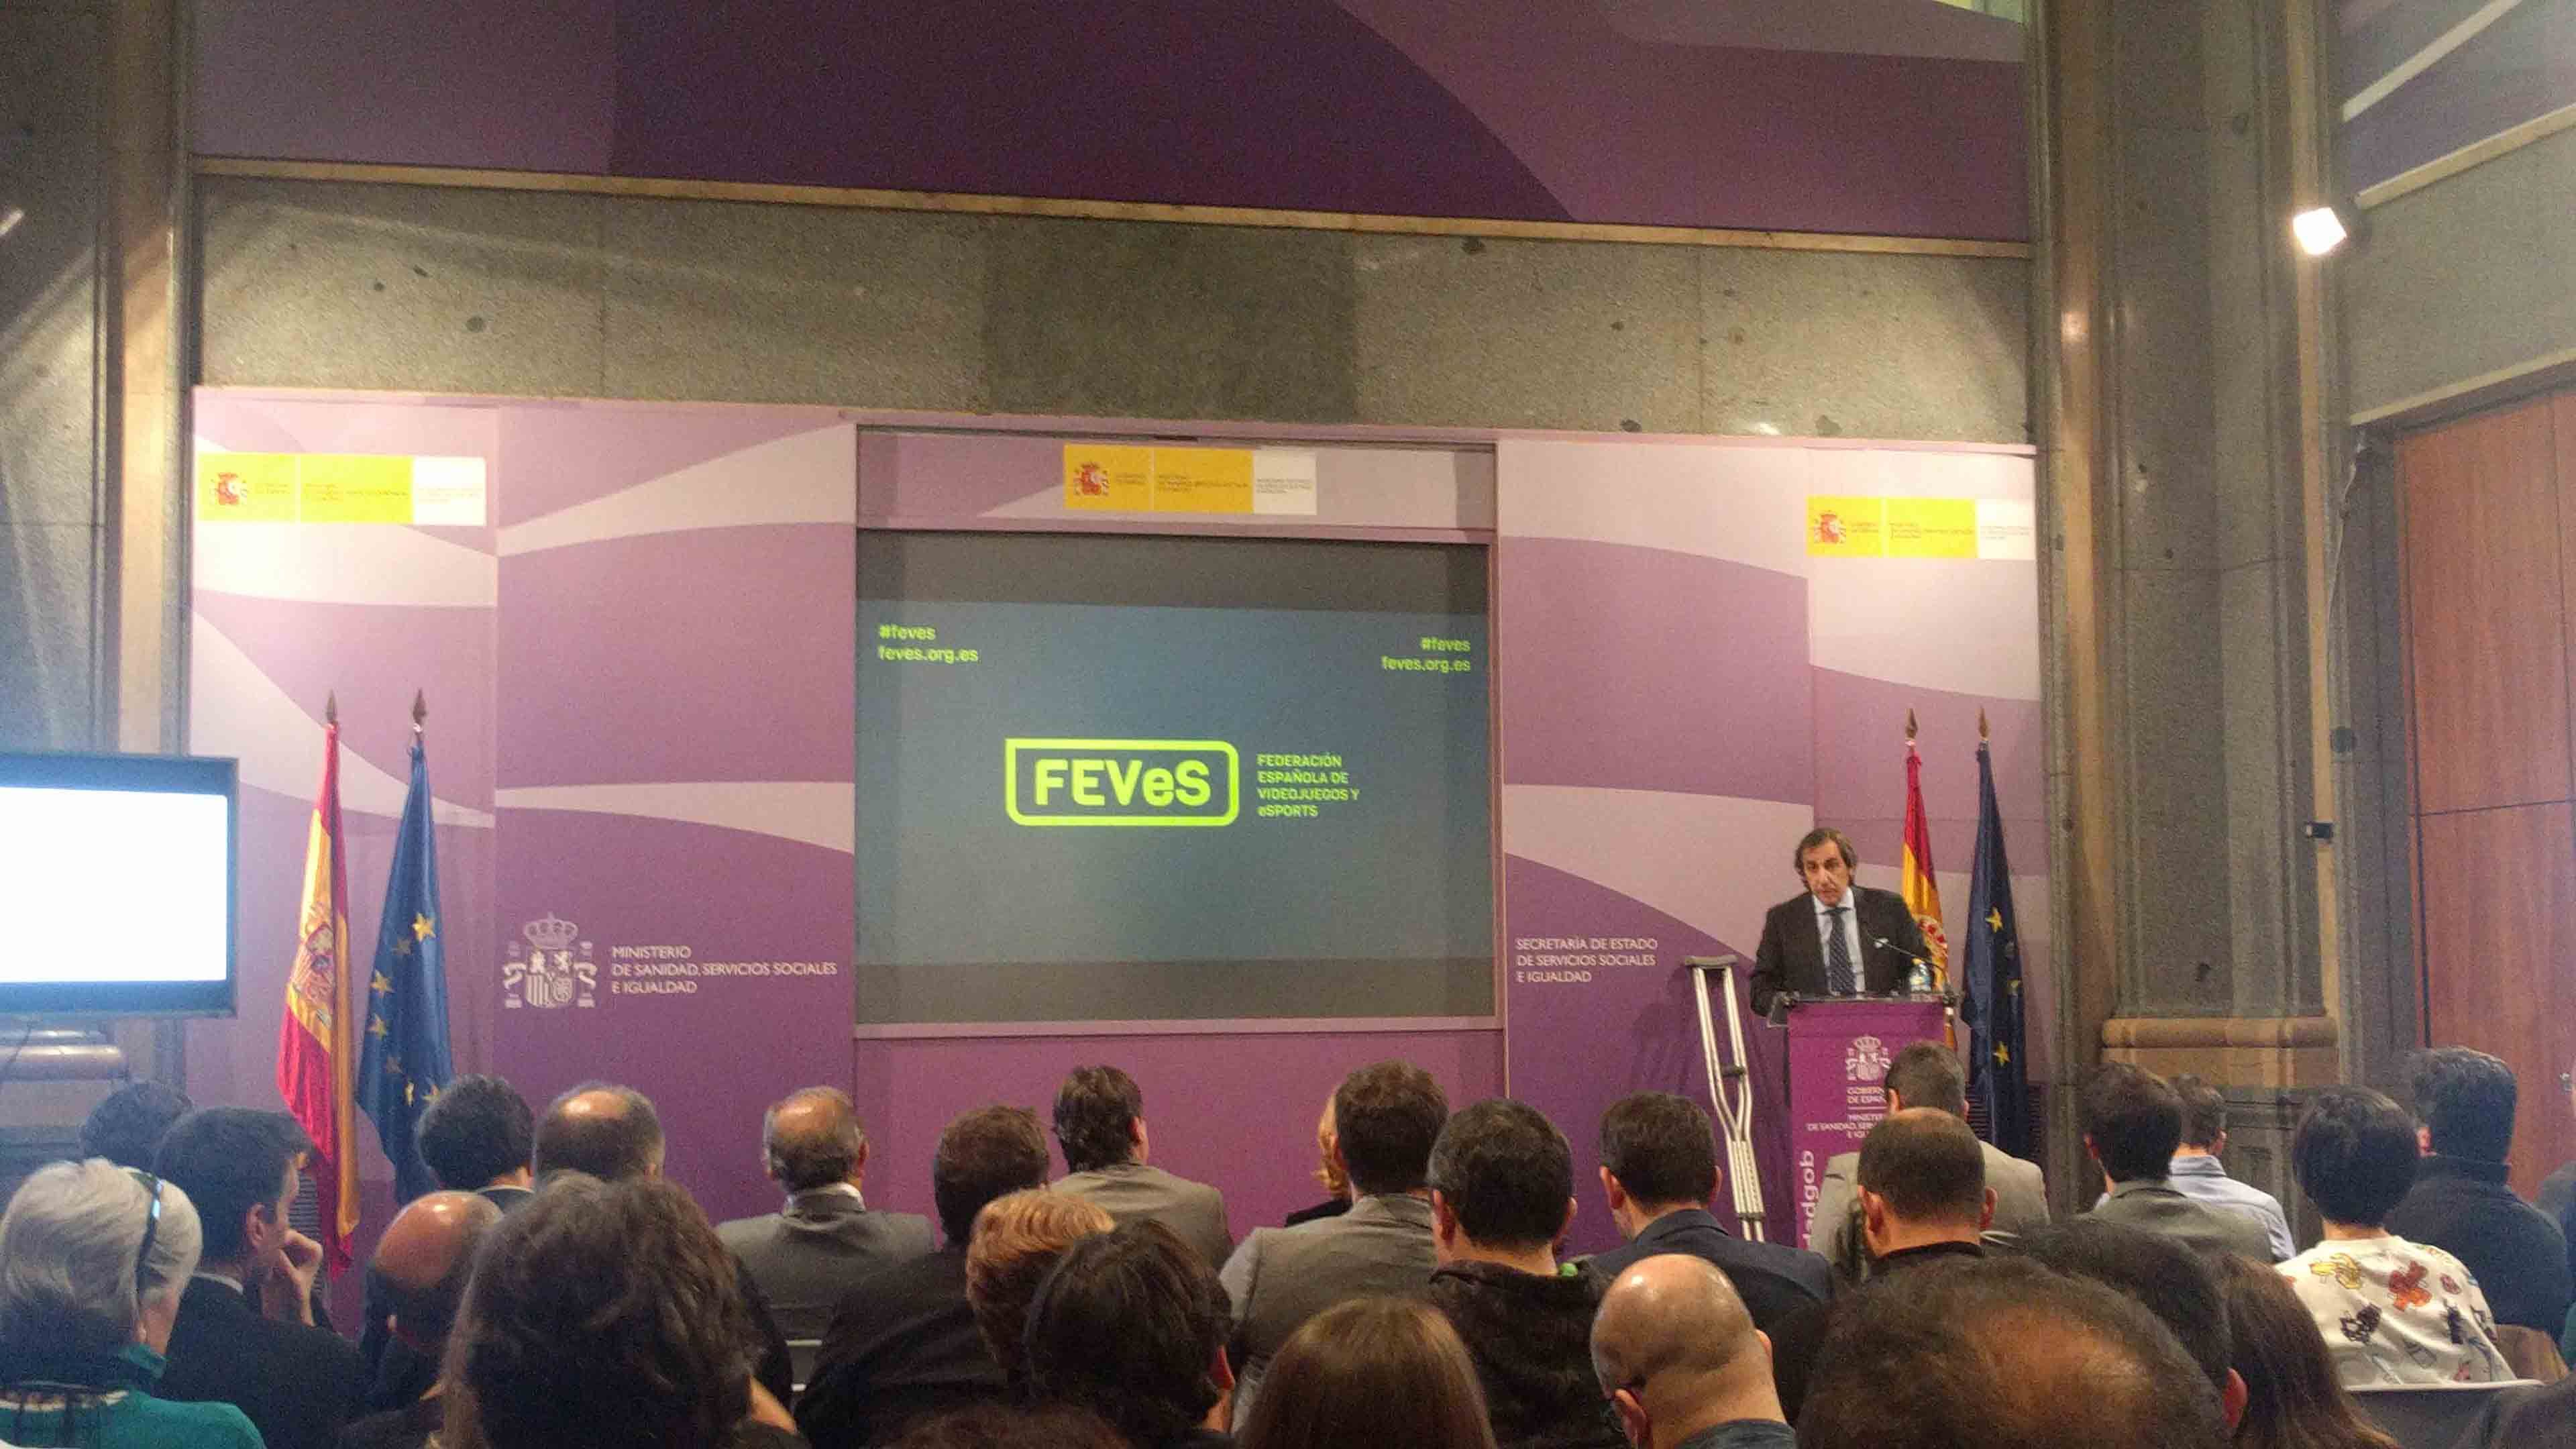 Manuel Moreno, Presidente de FEVeS, desgranó los objetivos de la Federación ante una sala abarrotada de público.